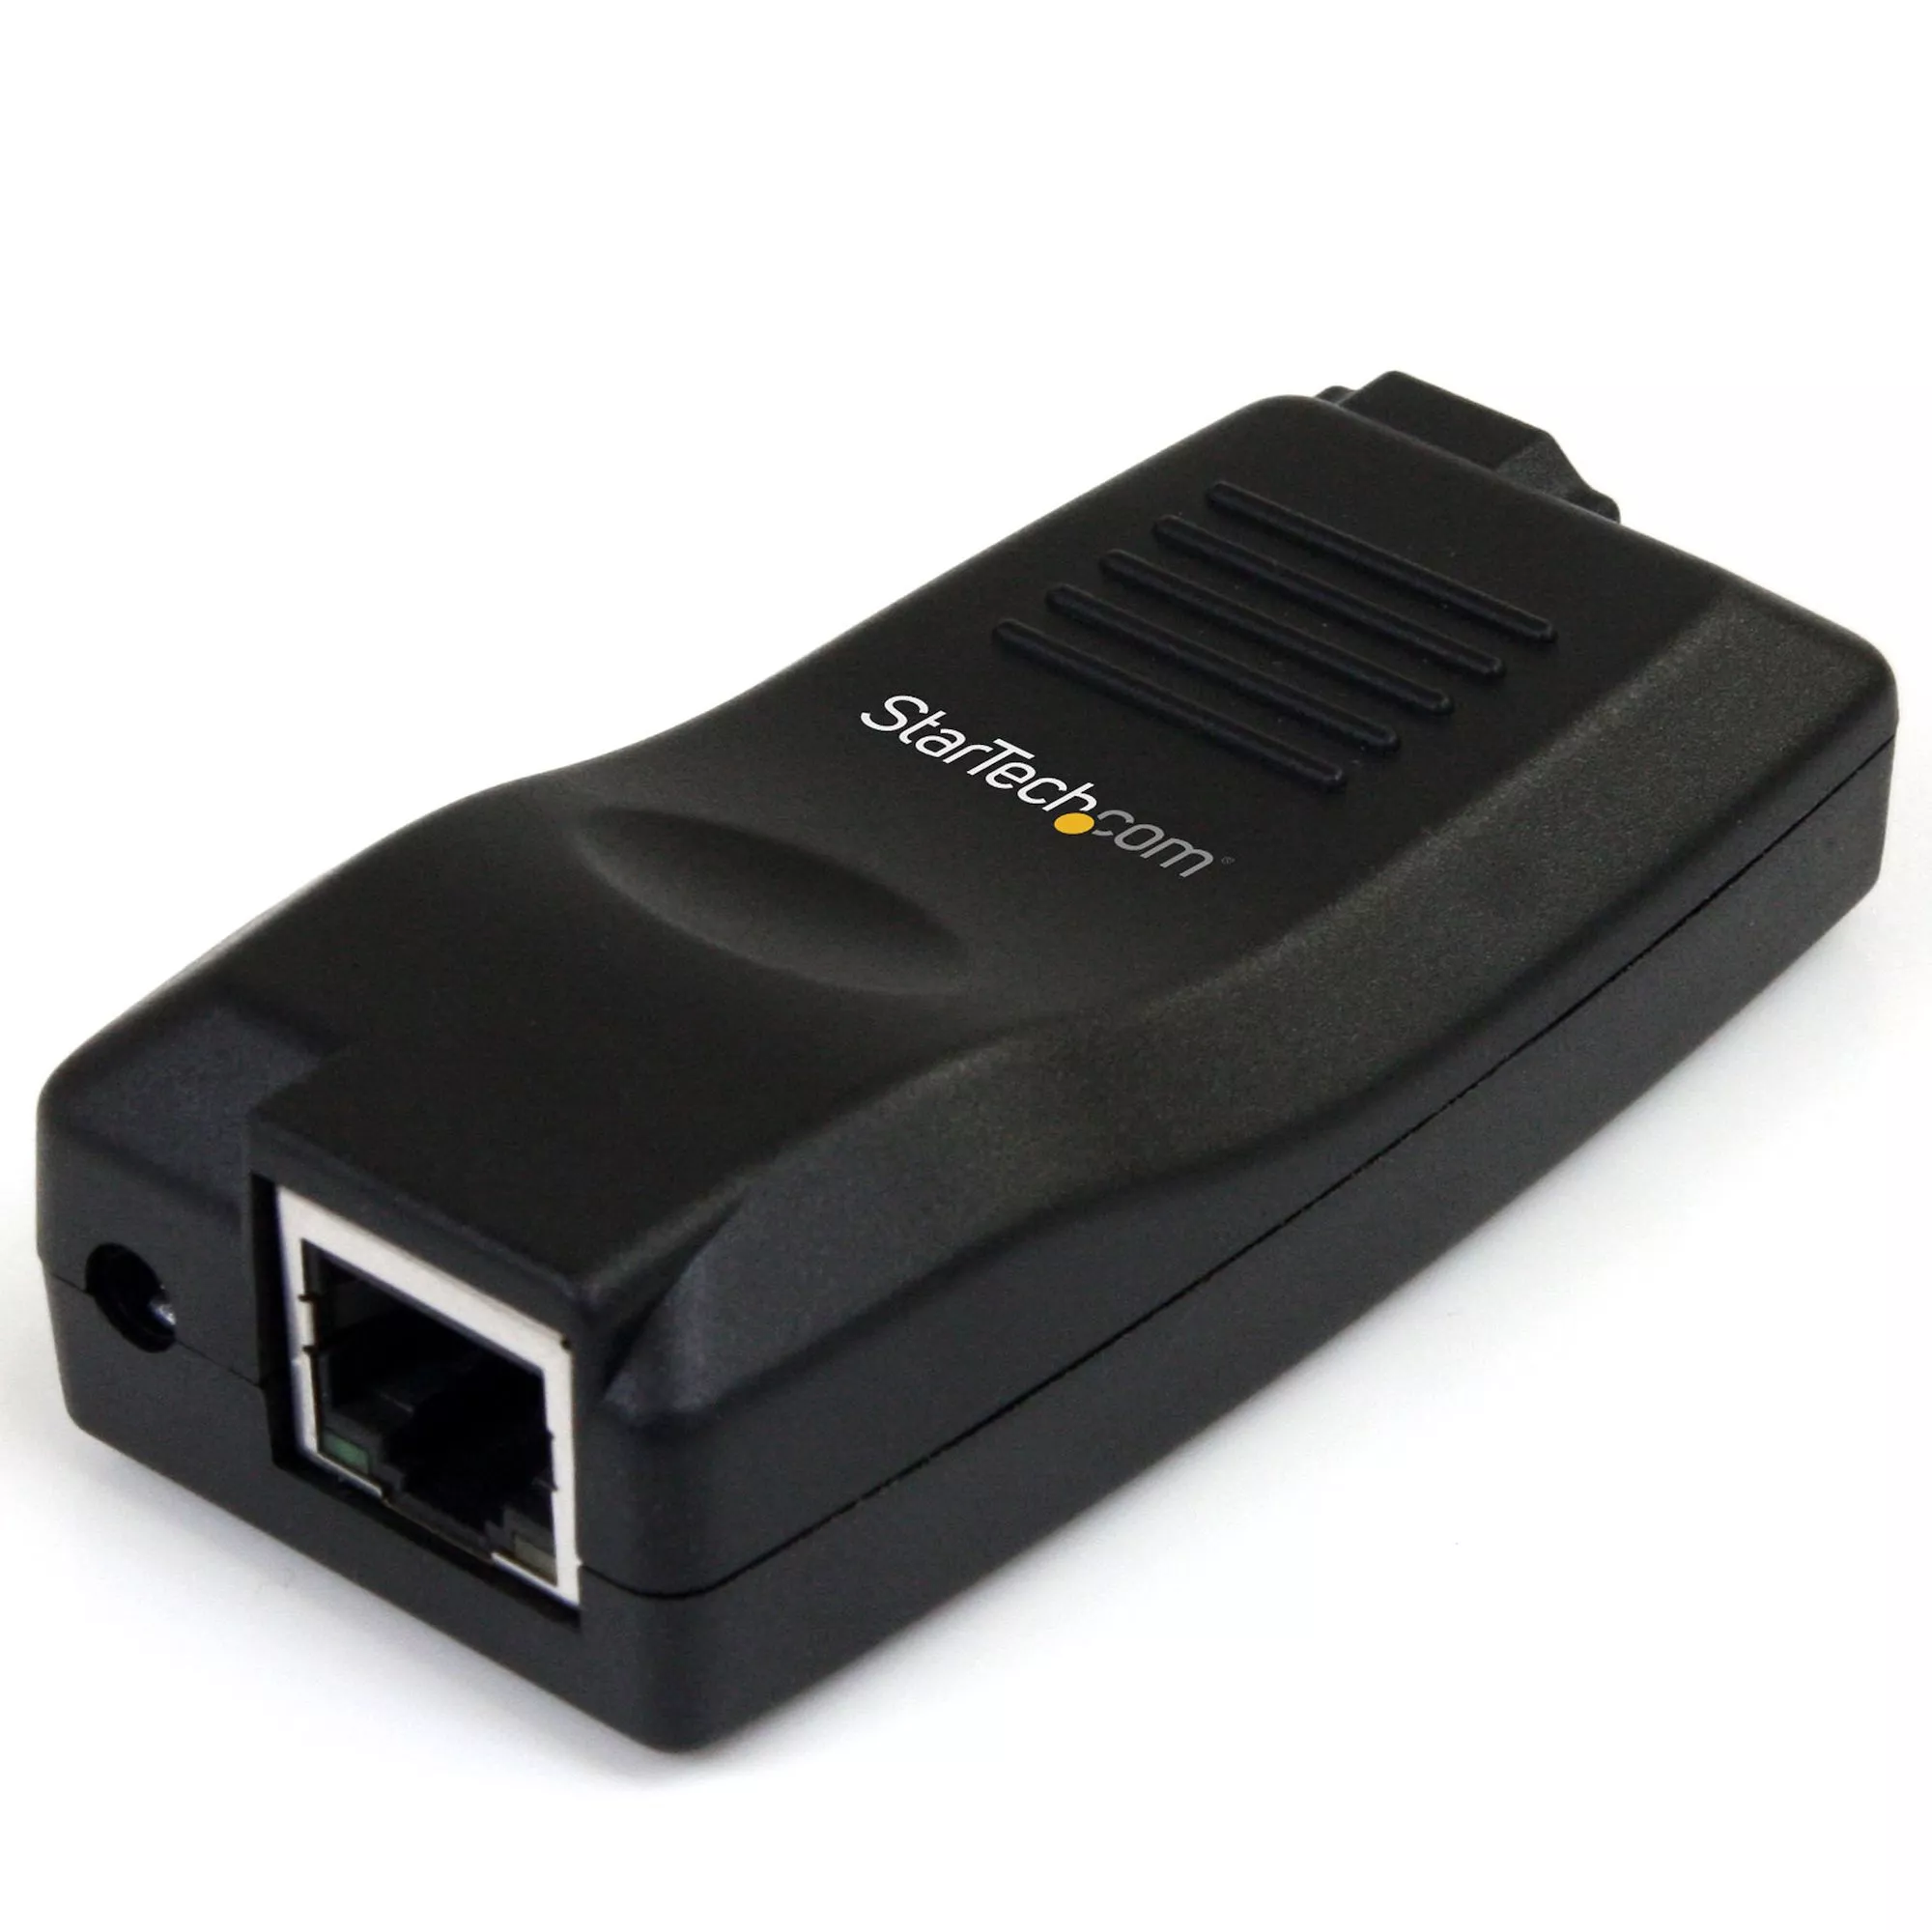 Achat StarTech.com Serveur de périphériques USB sur IP Gigabit au meilleur prix